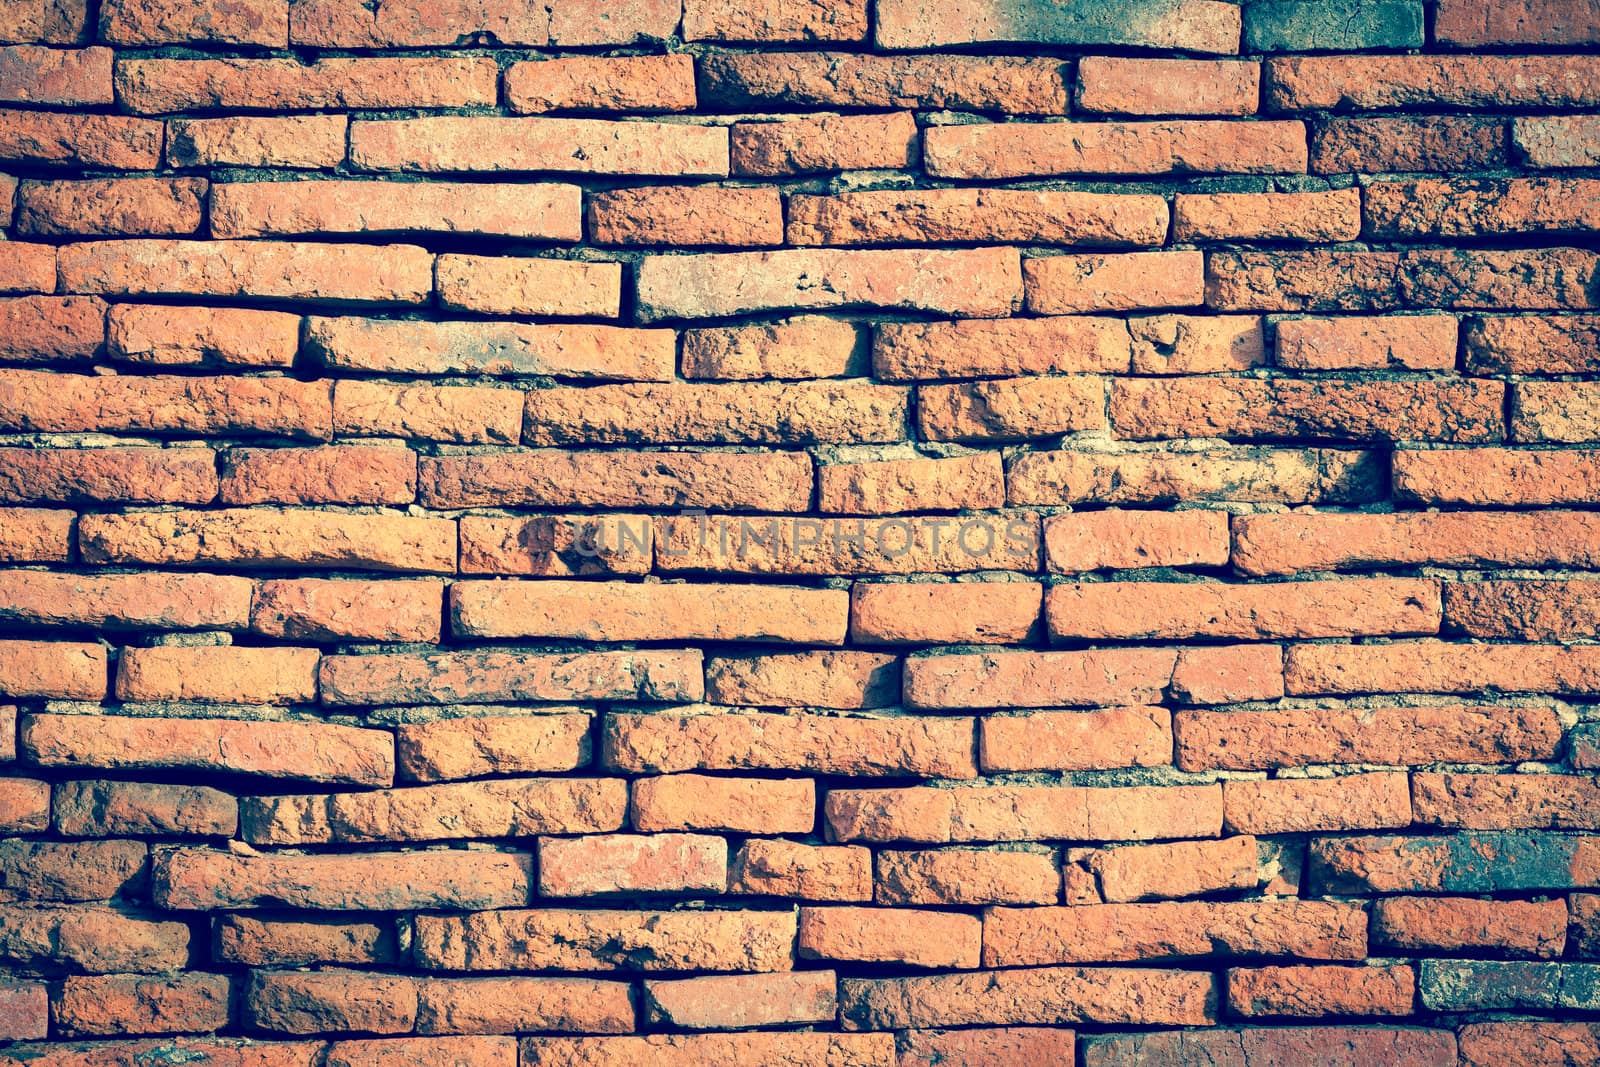 Texture of old brick wall at Ayudhaya near Bangkok, Thailand.